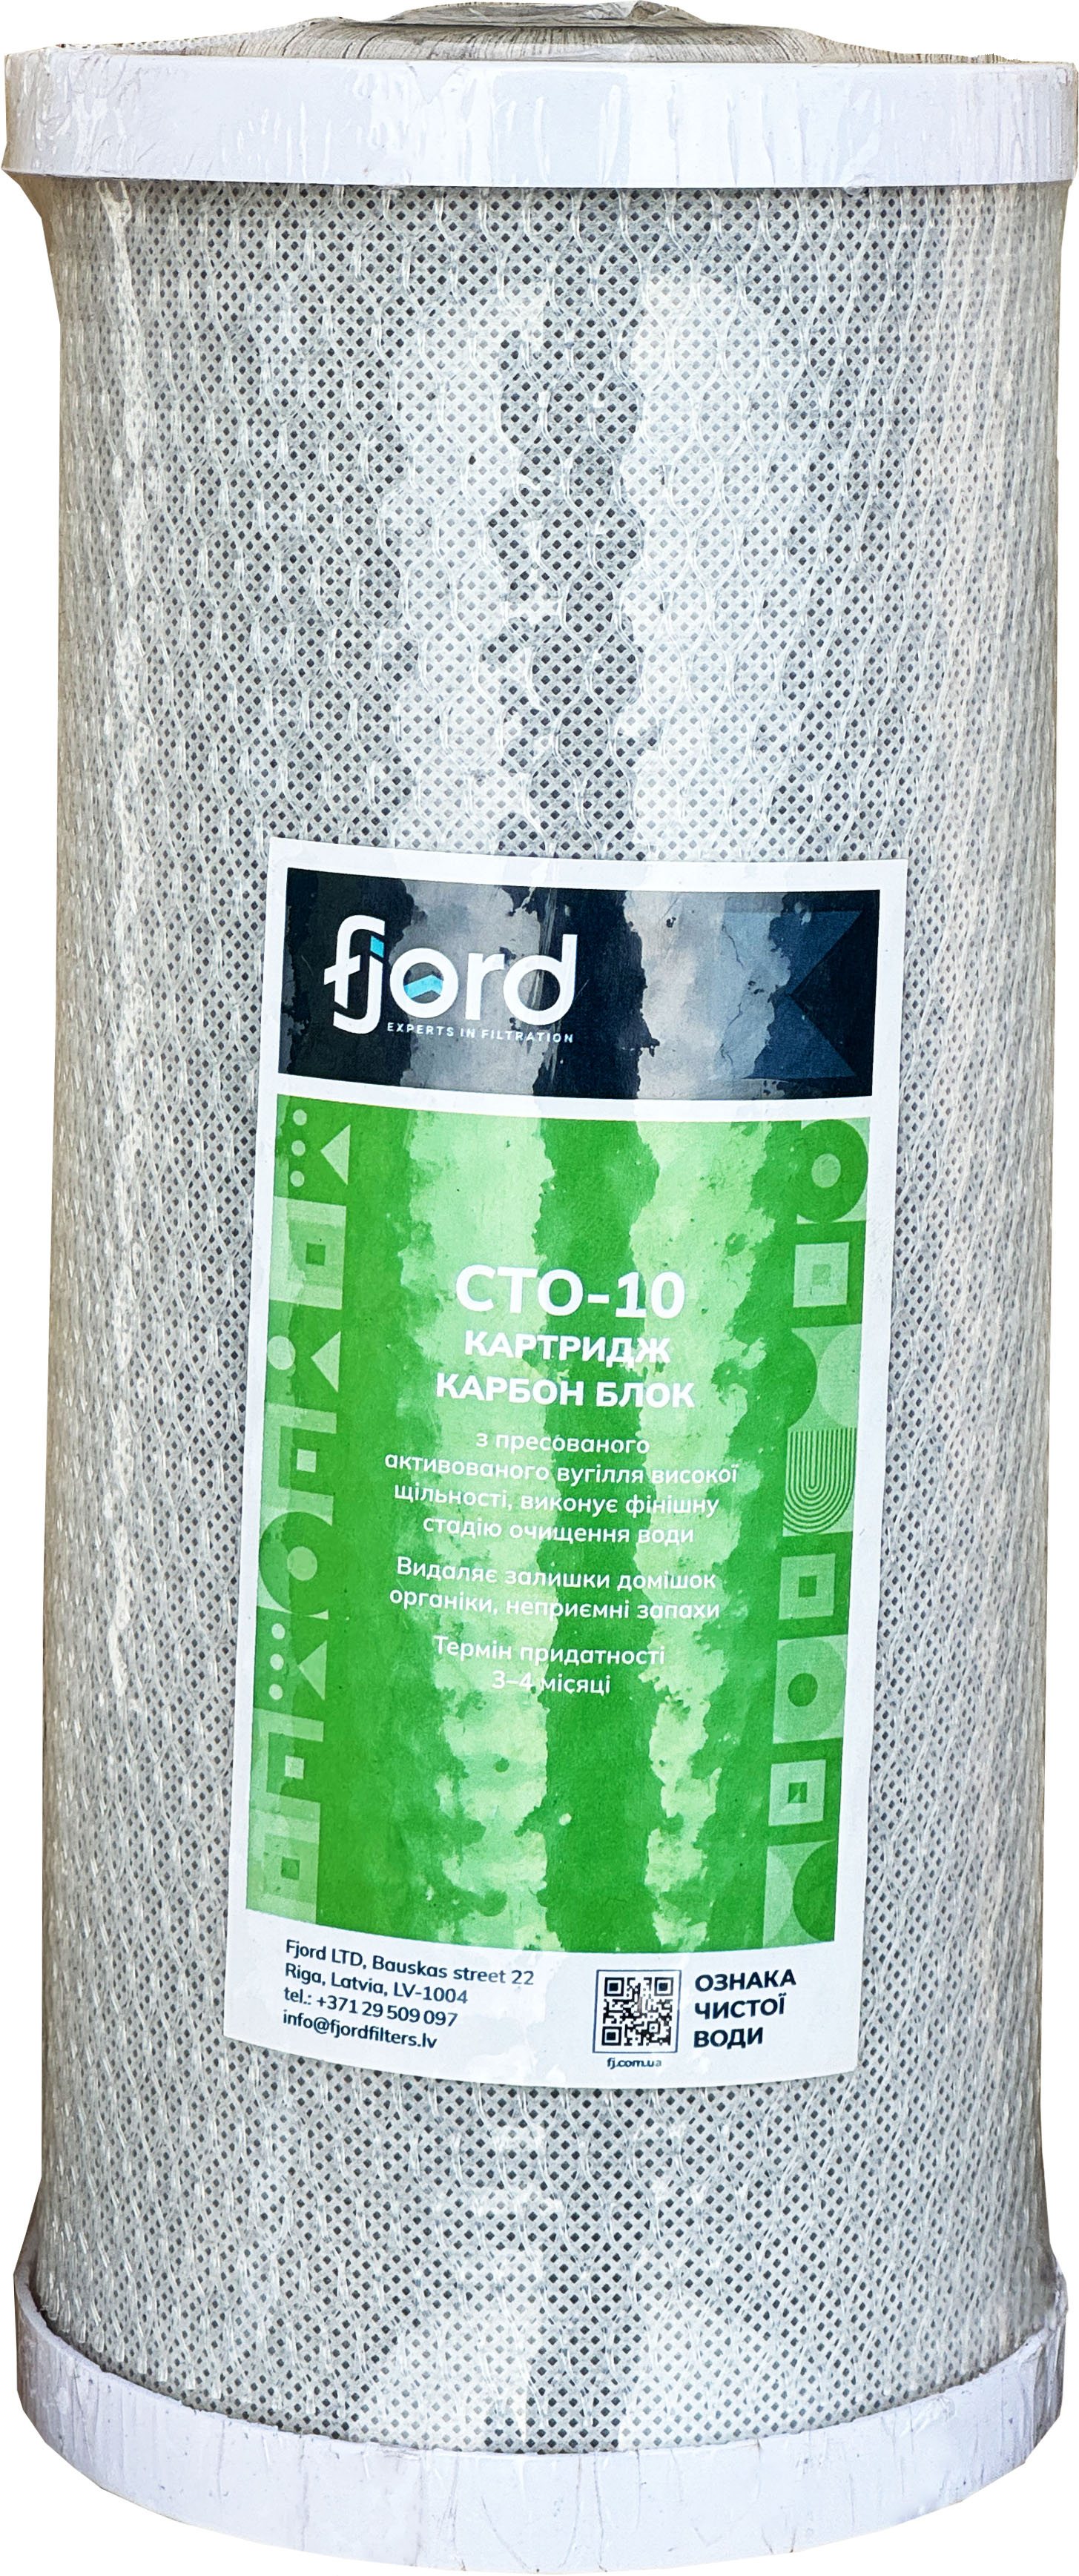 Картридж от тяжелых металлов Fjord CTO-BB10 (уголь)